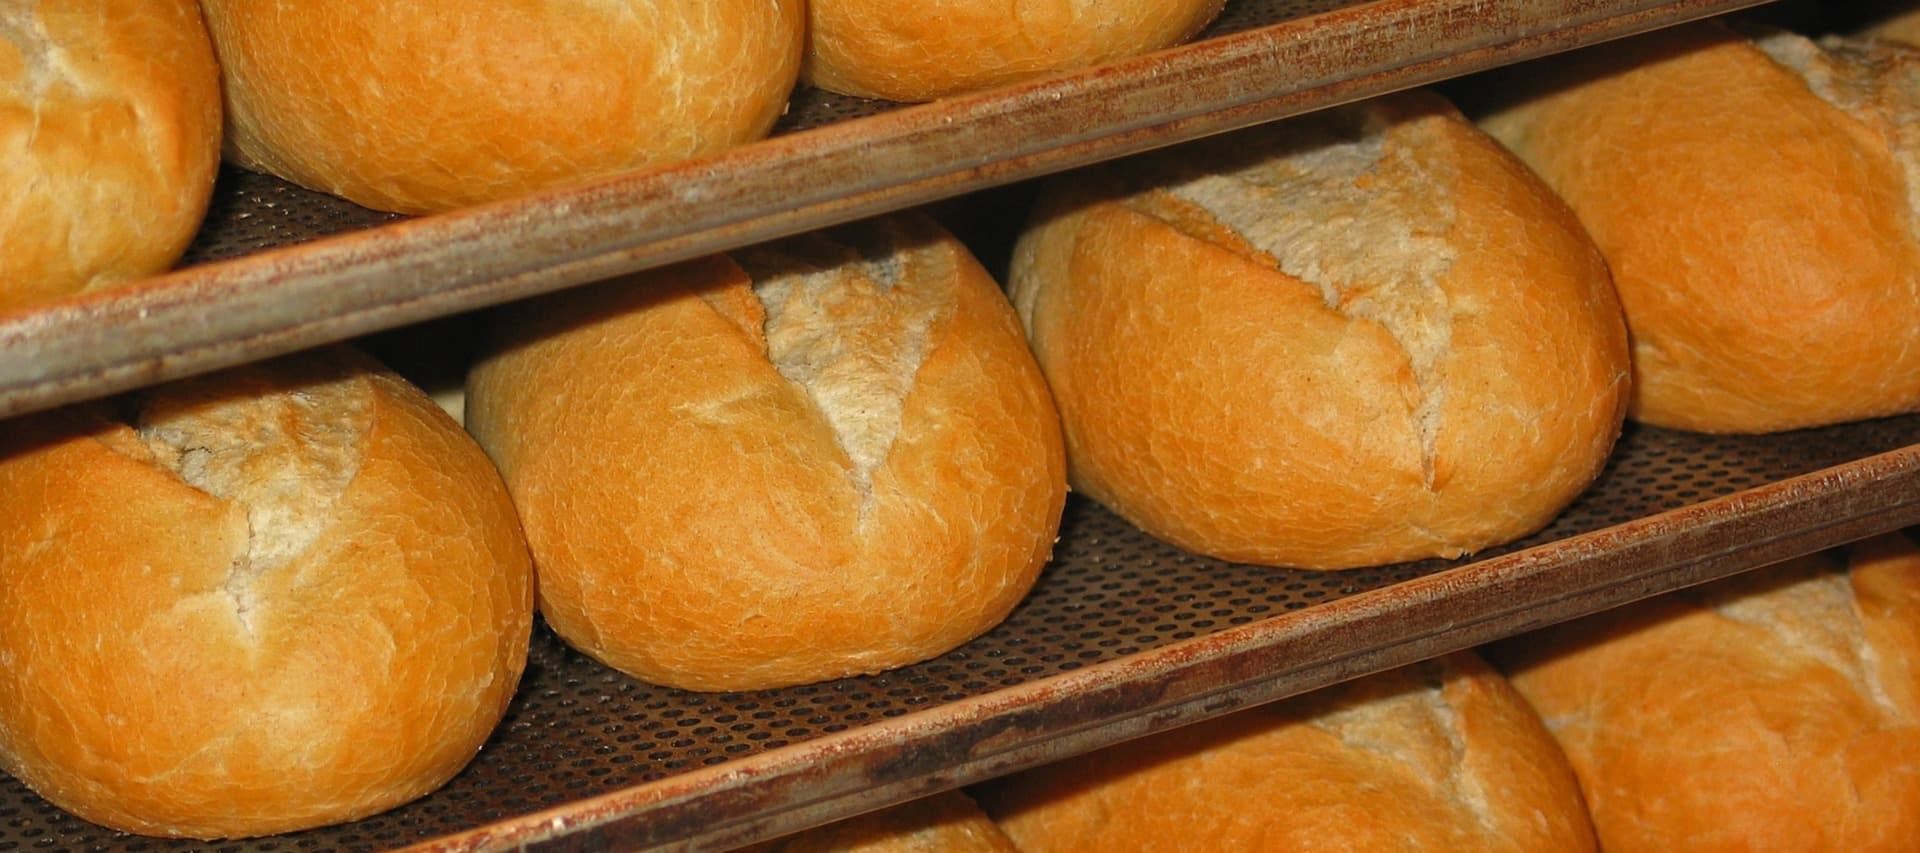 Фото новости: "Хлебопекам не хватает господдержки для борьбы с подорожанием хлеба"